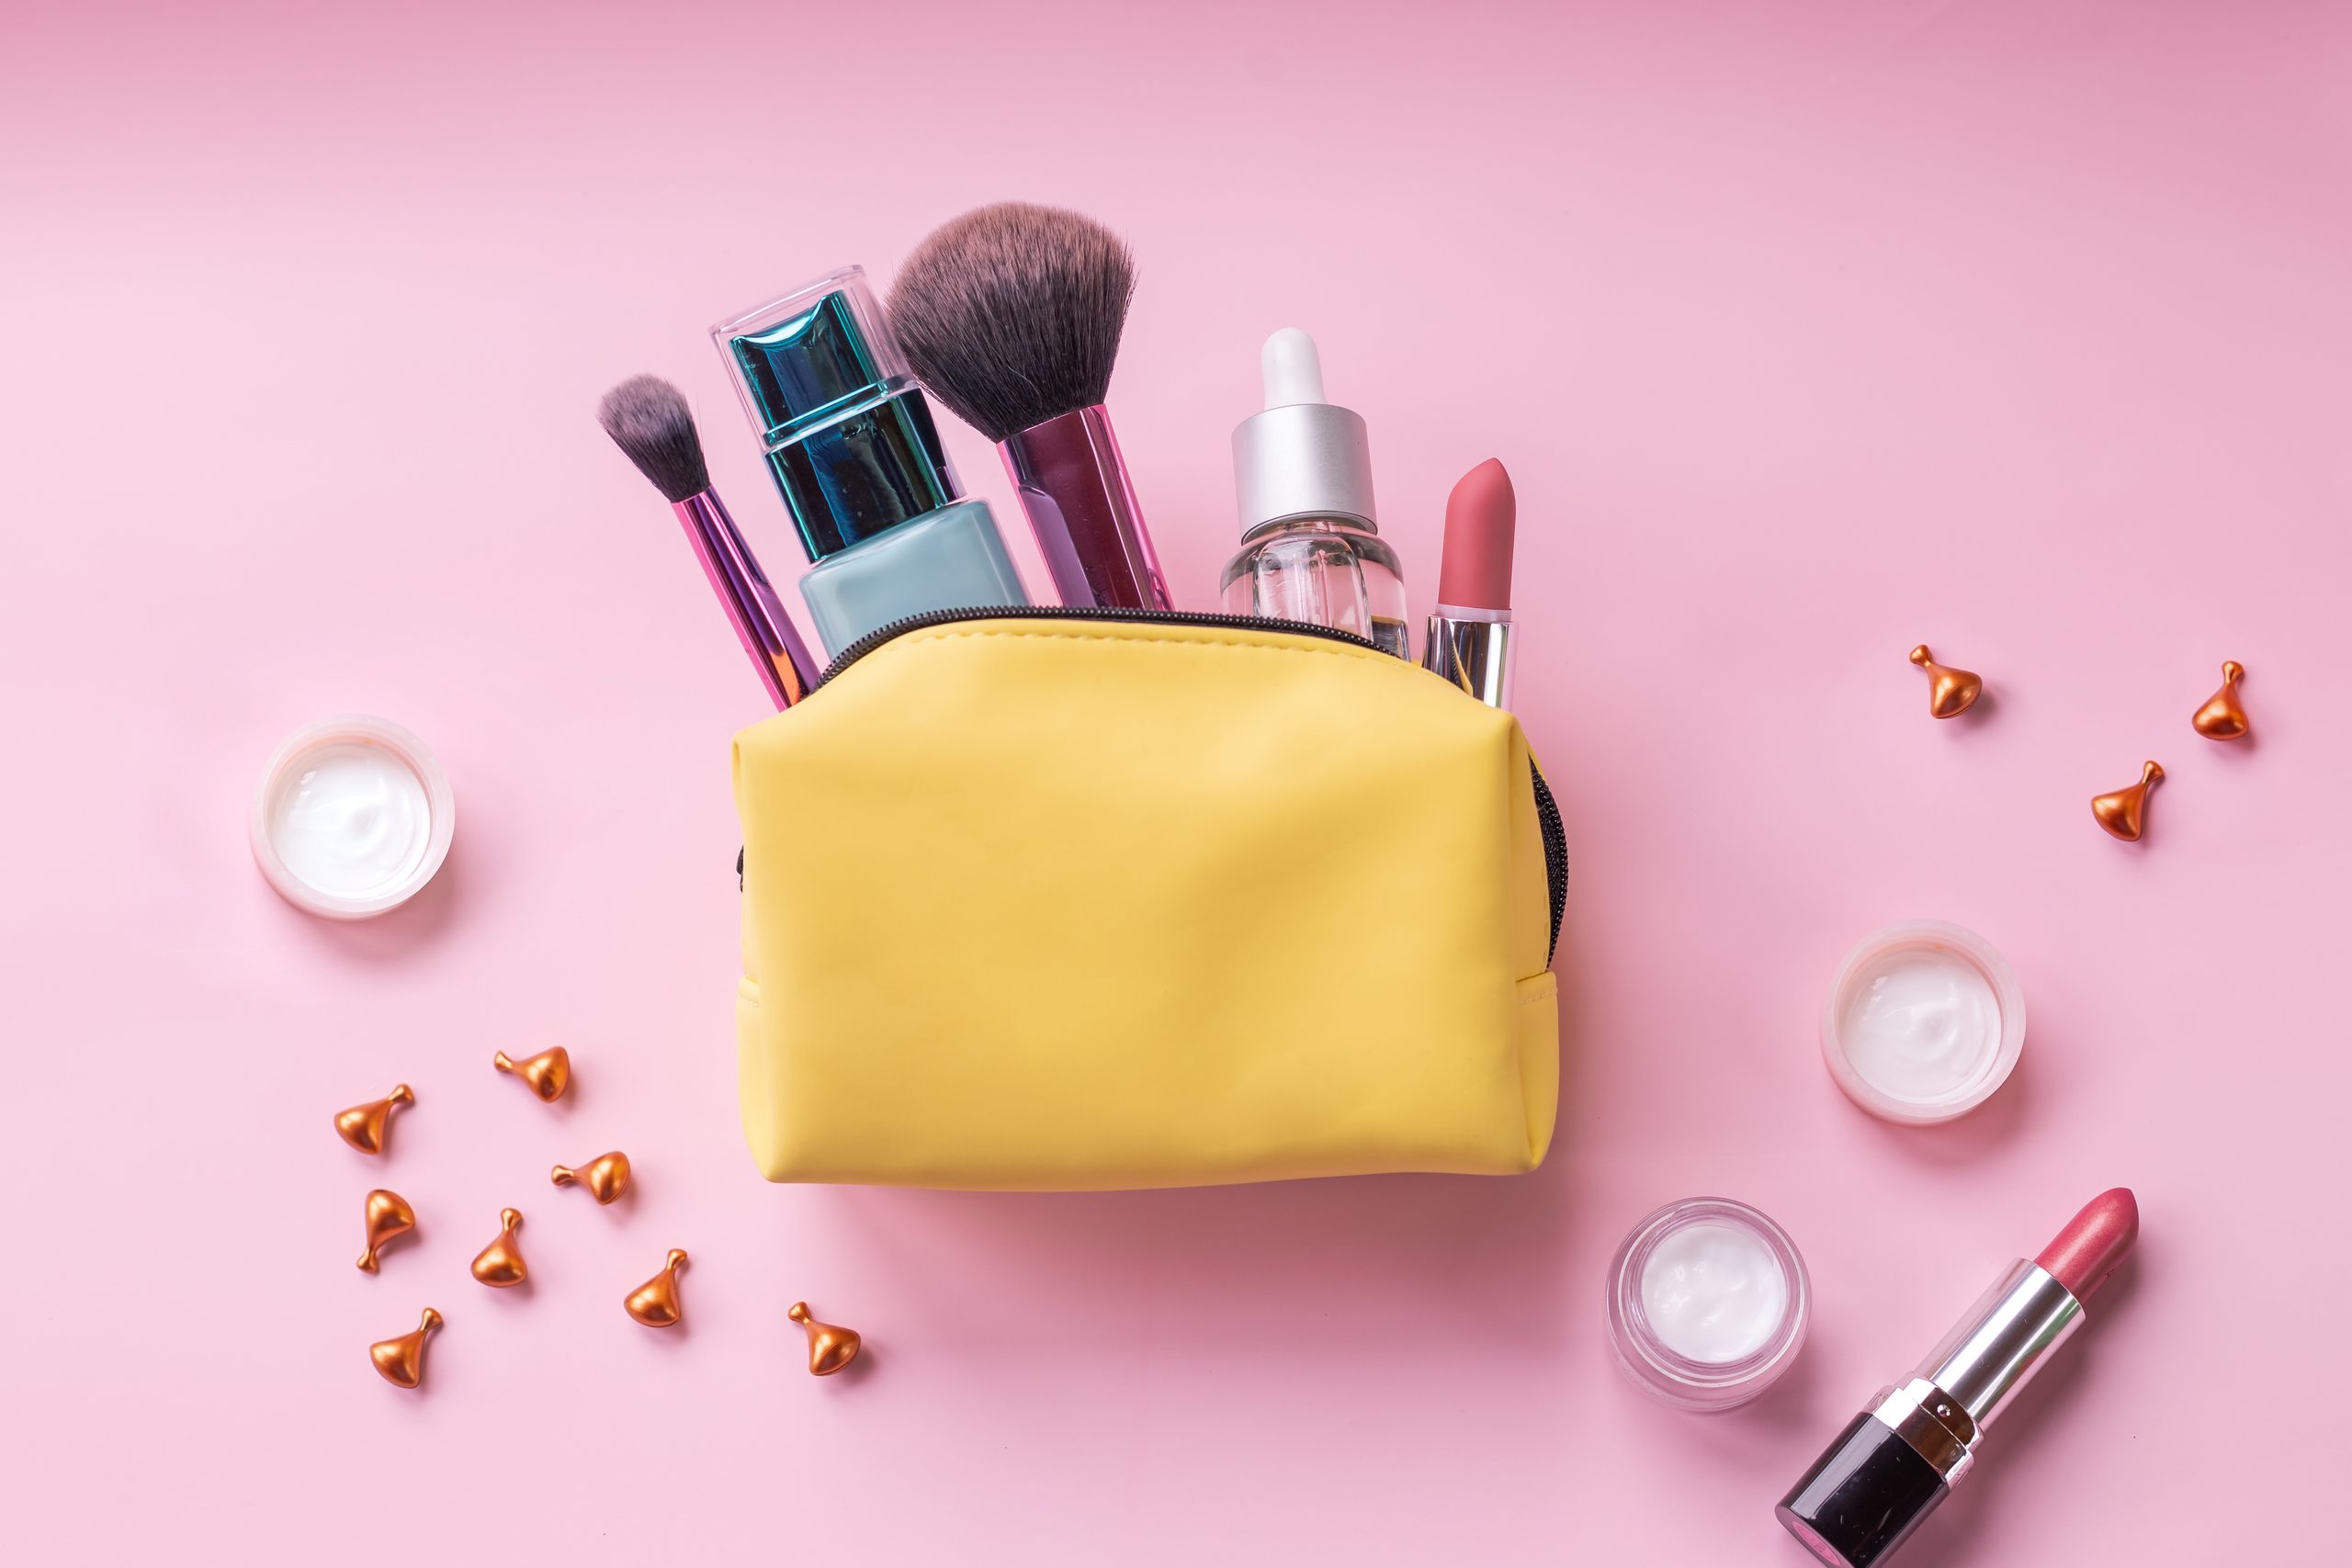 Kosmetikbeutel und Bürsten einzeln auf rosafarbenem Hintergrund. Gelbe Kosmetiktüte. Grundfarben Rosa und Gold. Hautcreme, Lippenstift, Handtasche, Kosmetikartikel